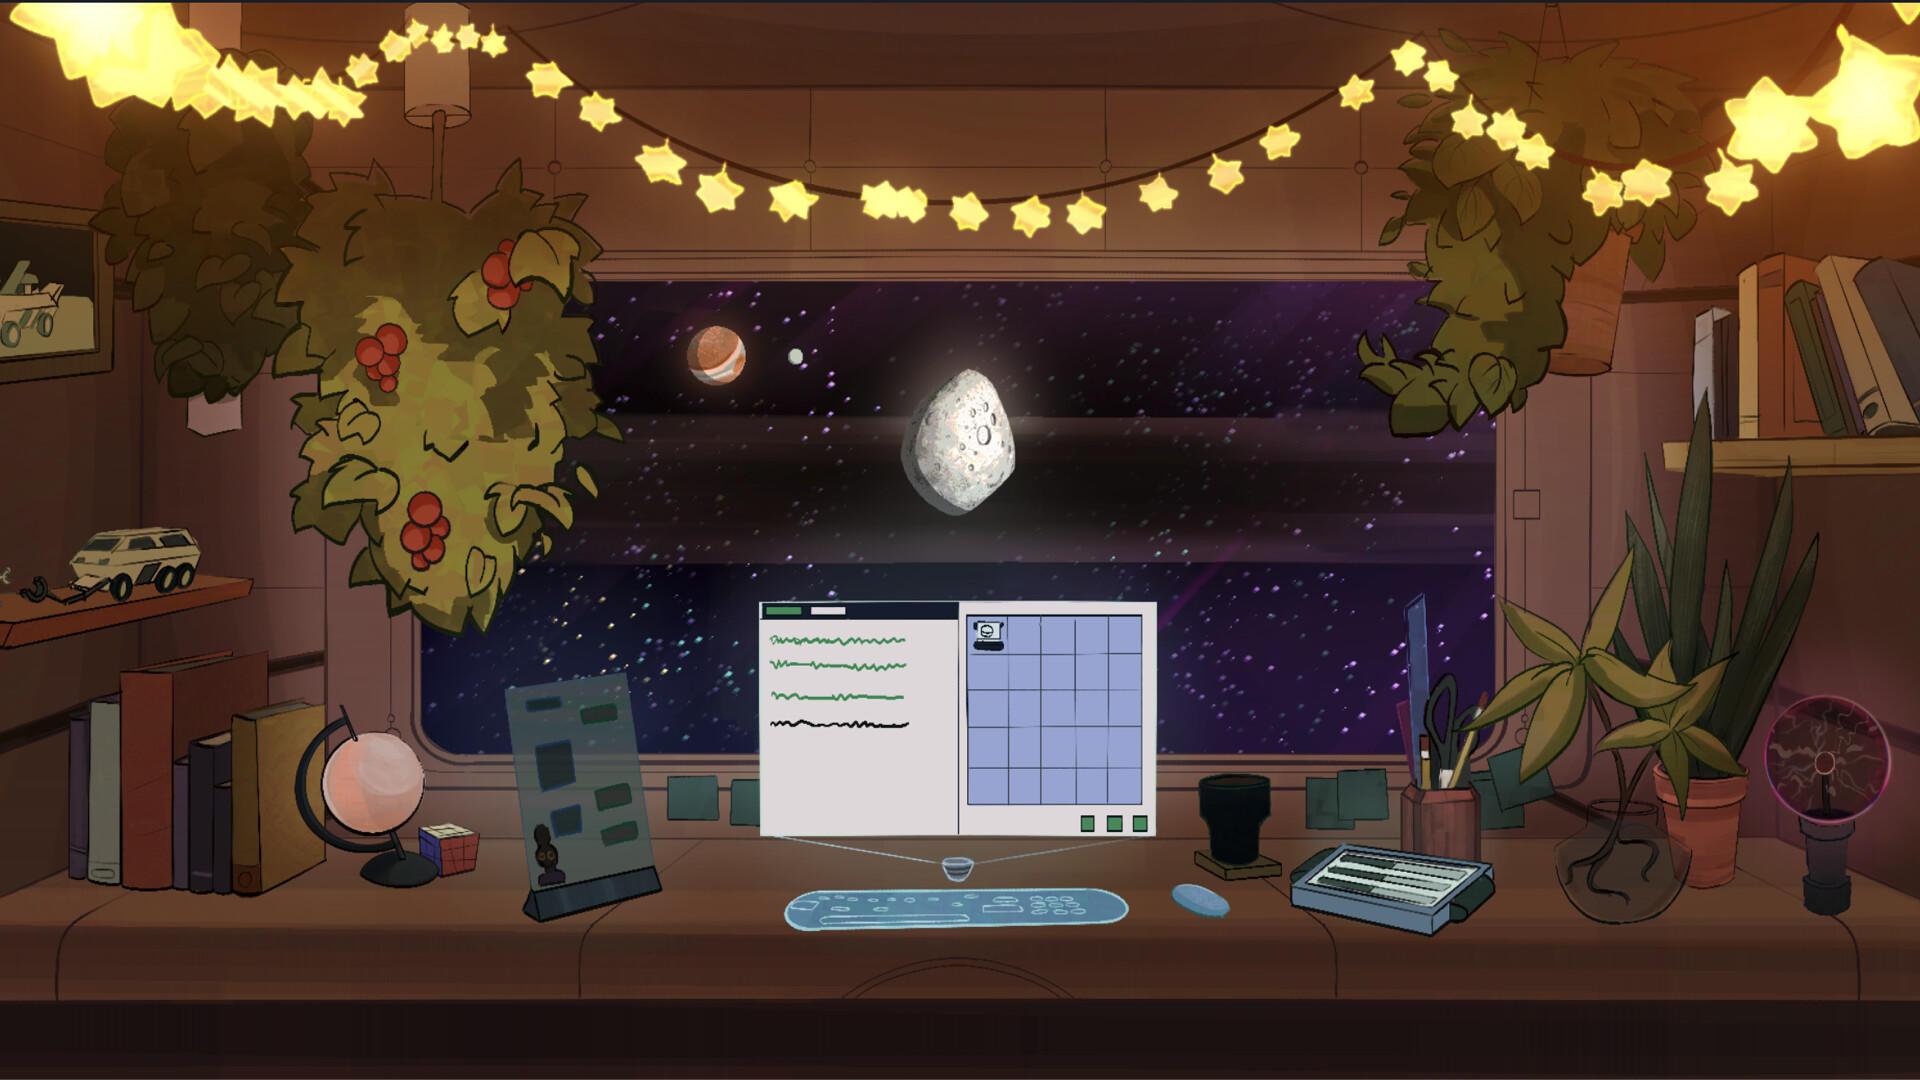 Screenshot 1 of Элара: приключение в области программирования в космосе 